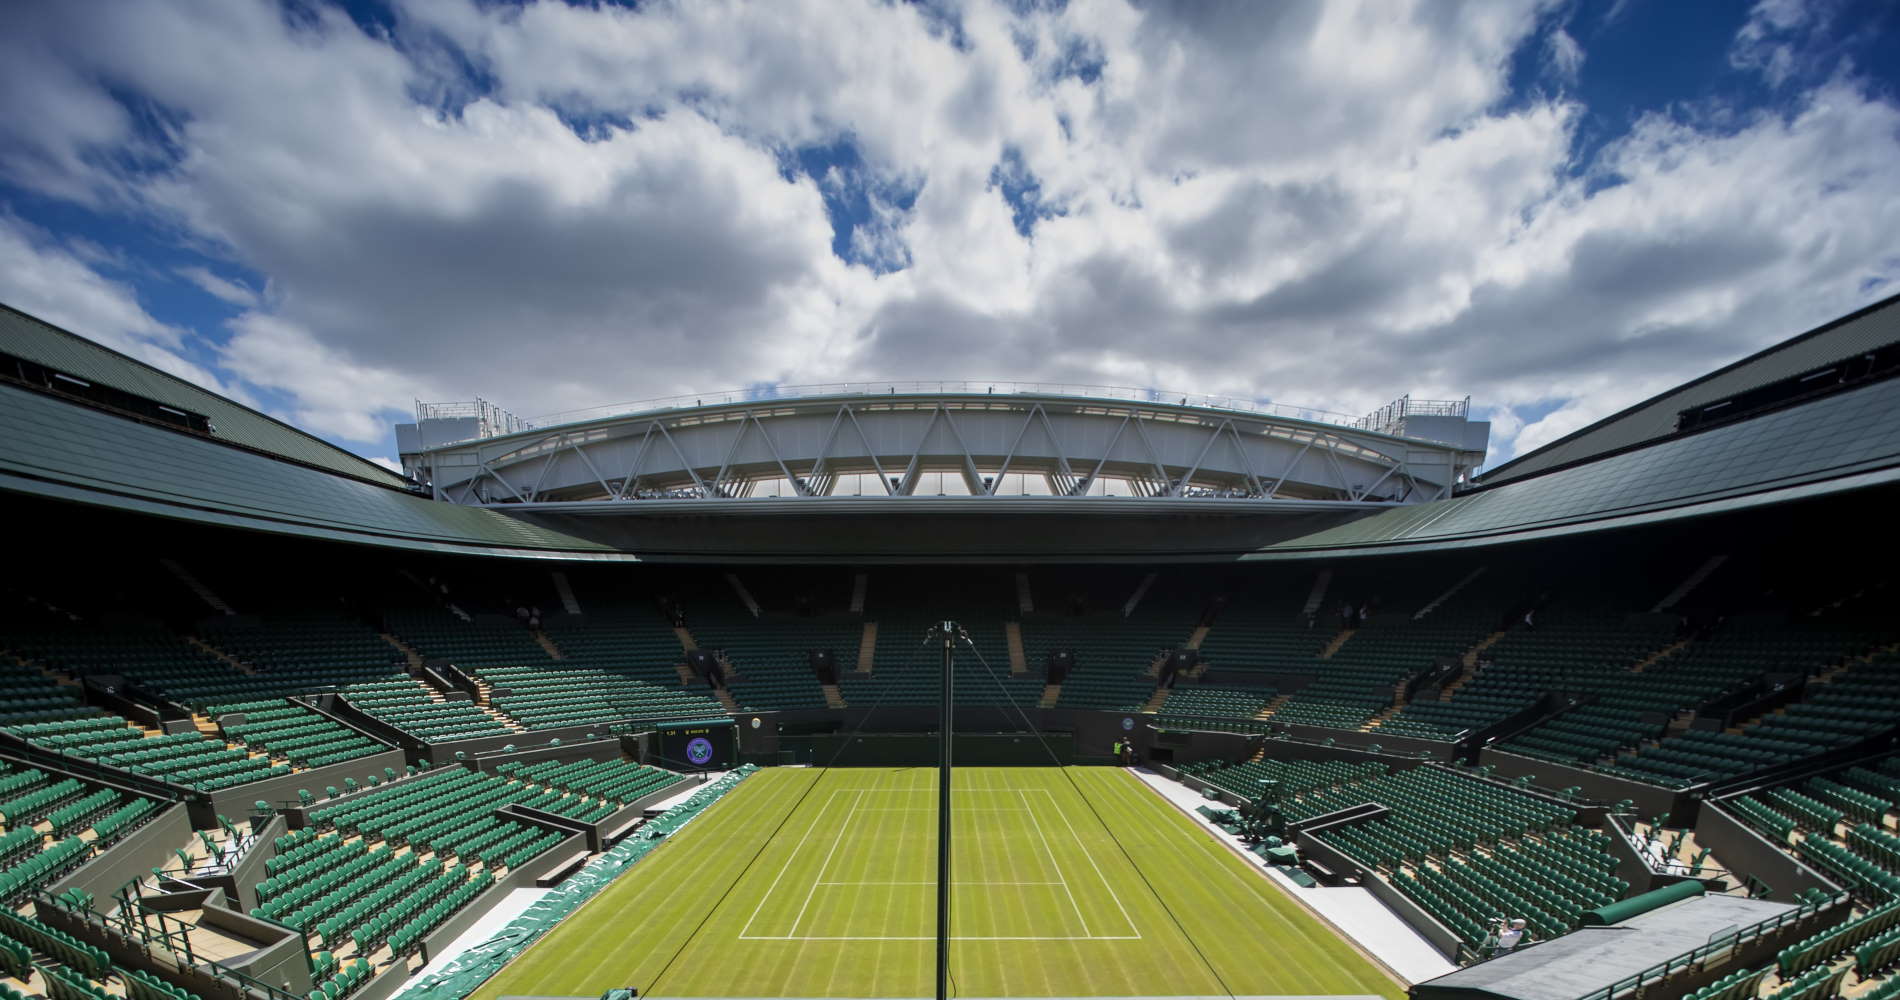 Wimbledon Court 1, 2019